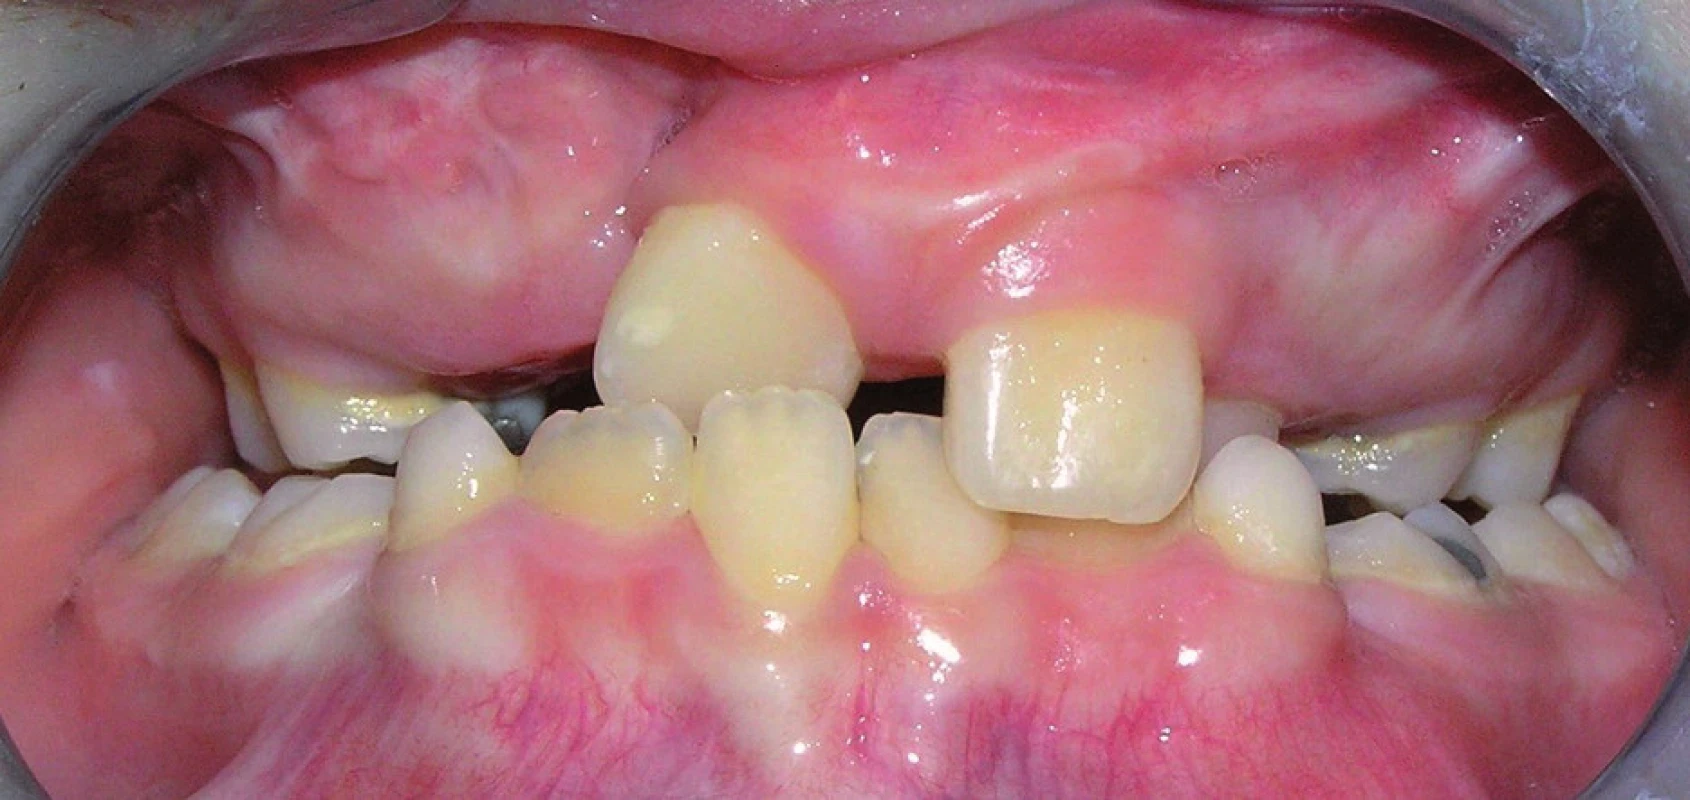 Skus chlapce s pravostranným celkovým rozštěpem ve věku 8 let a 5 měsíců. V laterálních úsecích chrupu je zkřížený skus, zuby 11 a 22 prořezaly do zákusu.